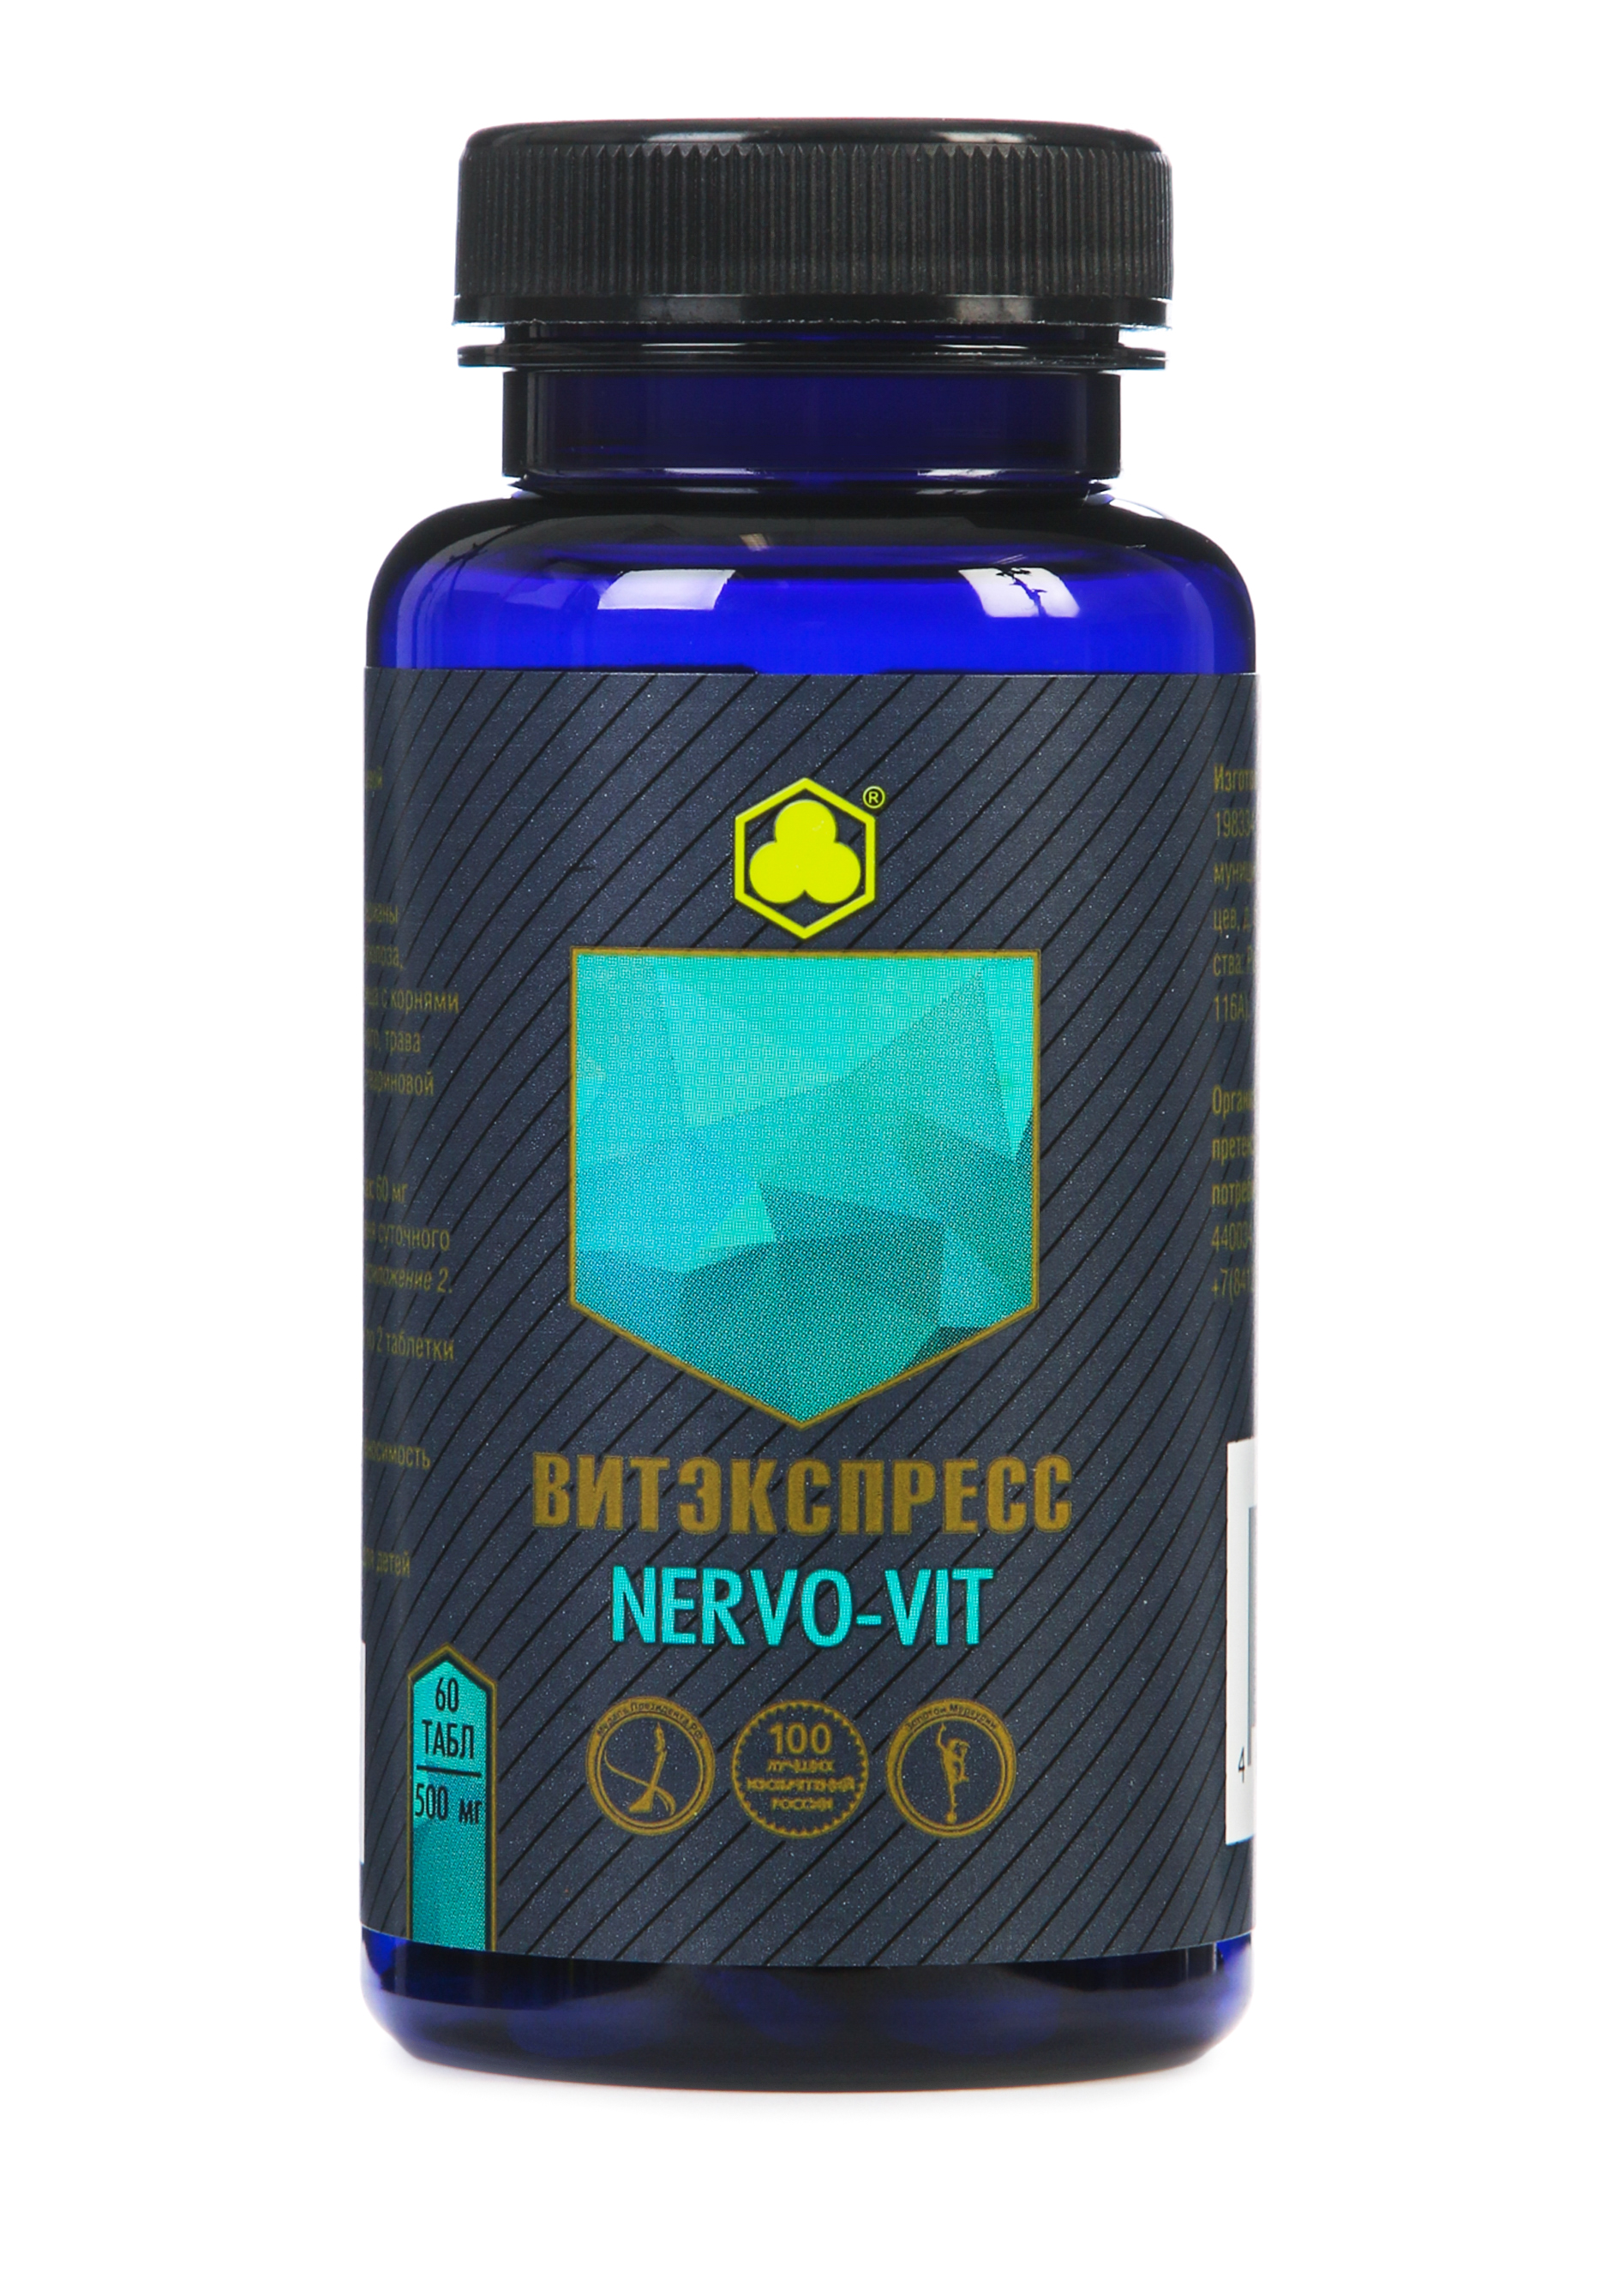 Пищевые добавки Органик комплекс NERVO-VIT